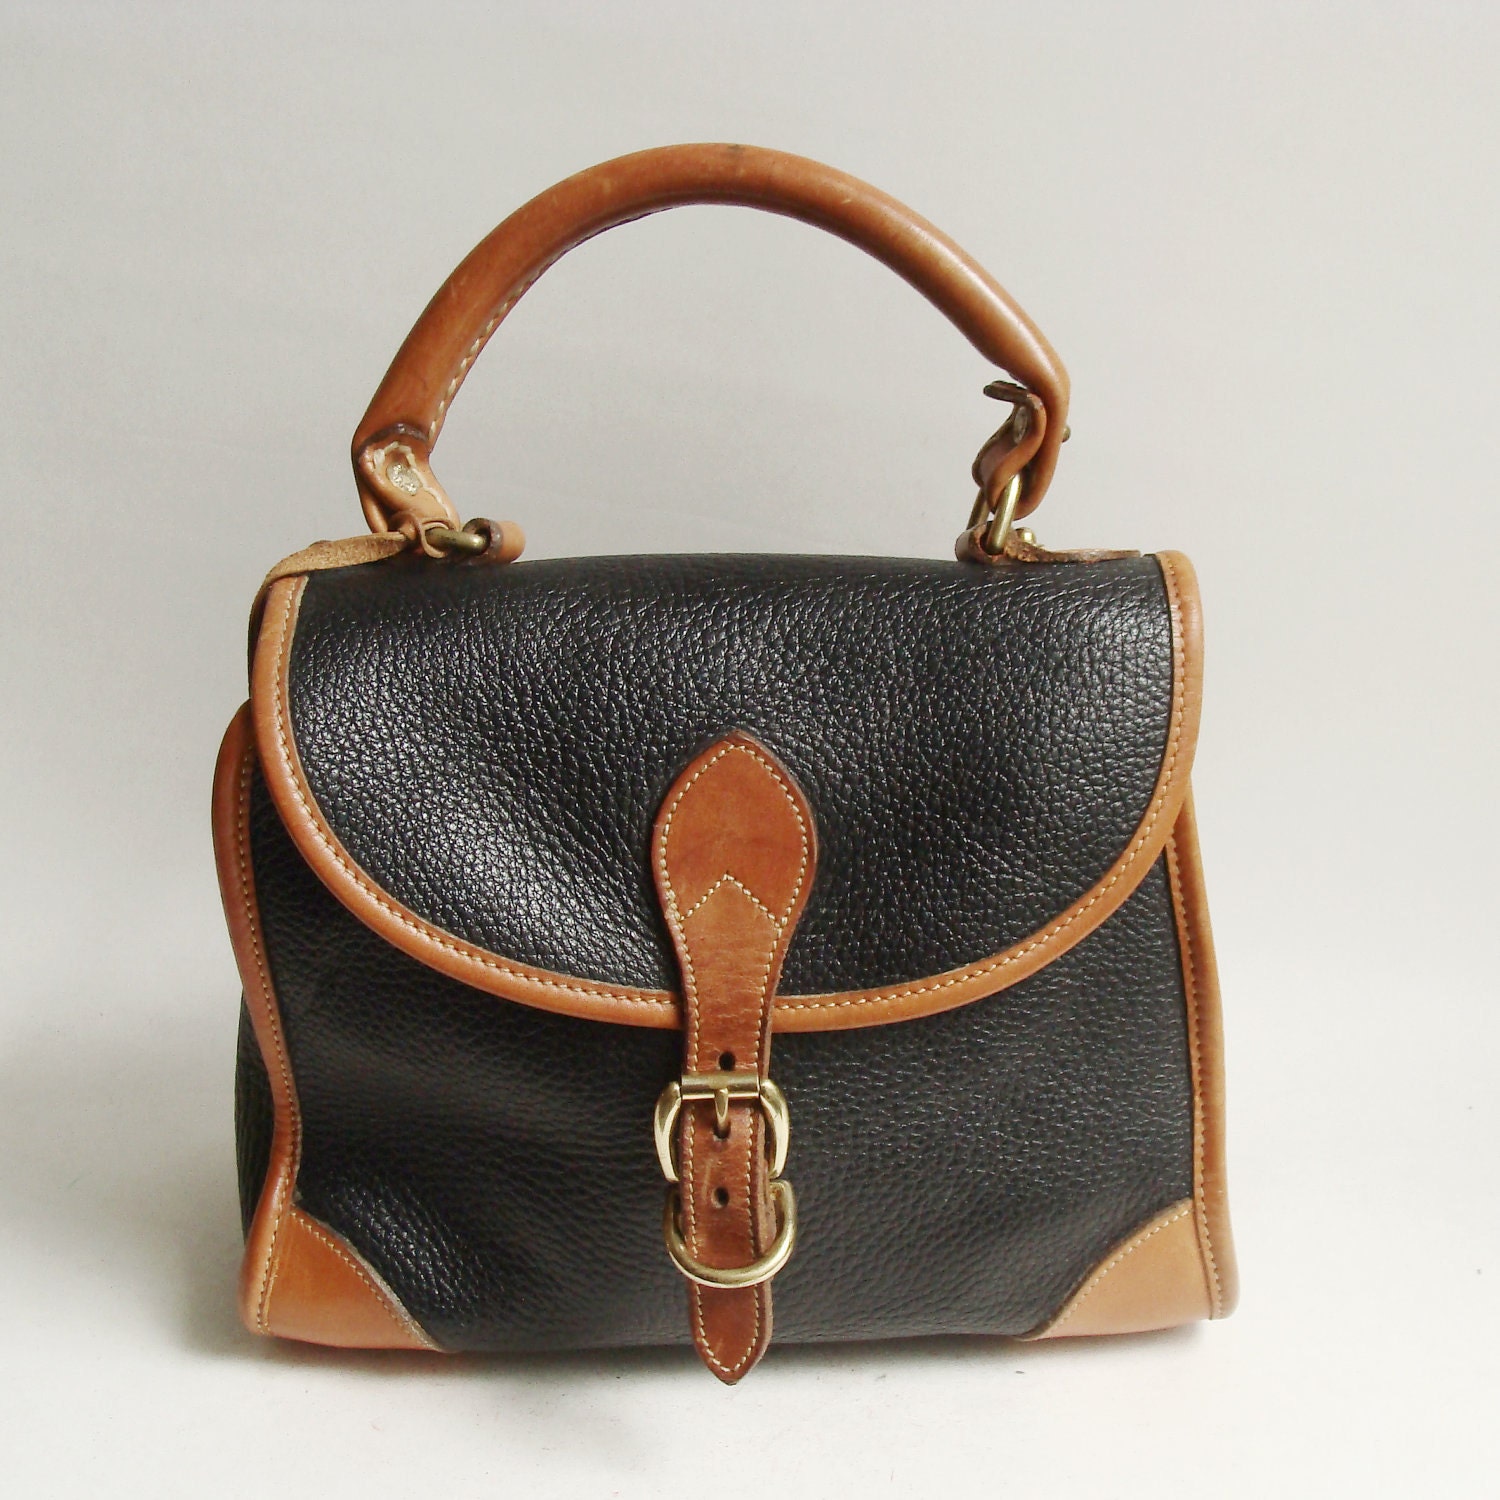 Dooney and Bourke handbag / black leather by OldBaltimoreVintage